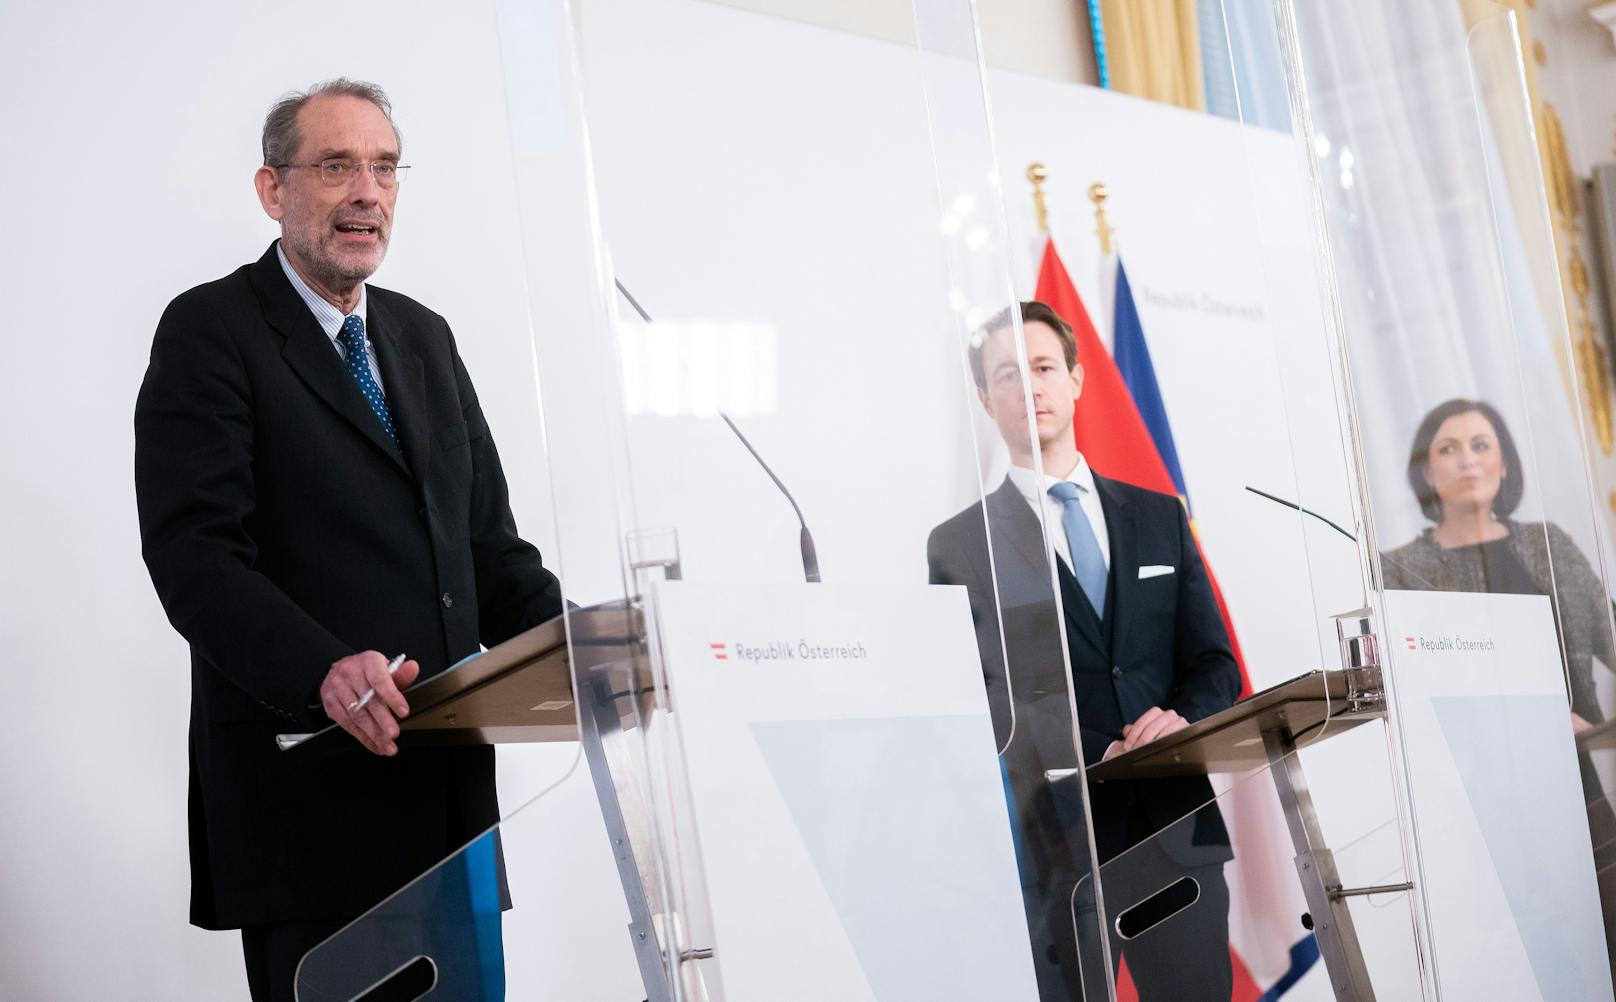 Bildungsminister Heinz Faßmann (ÖVP), Finanzminister Gernot Blümel (ÖVP) und Tourismusministerin Elisabeth Köstinger (ÖVP) während einer gemeinsamen Pressekonferenz am 2. Dezember 2020